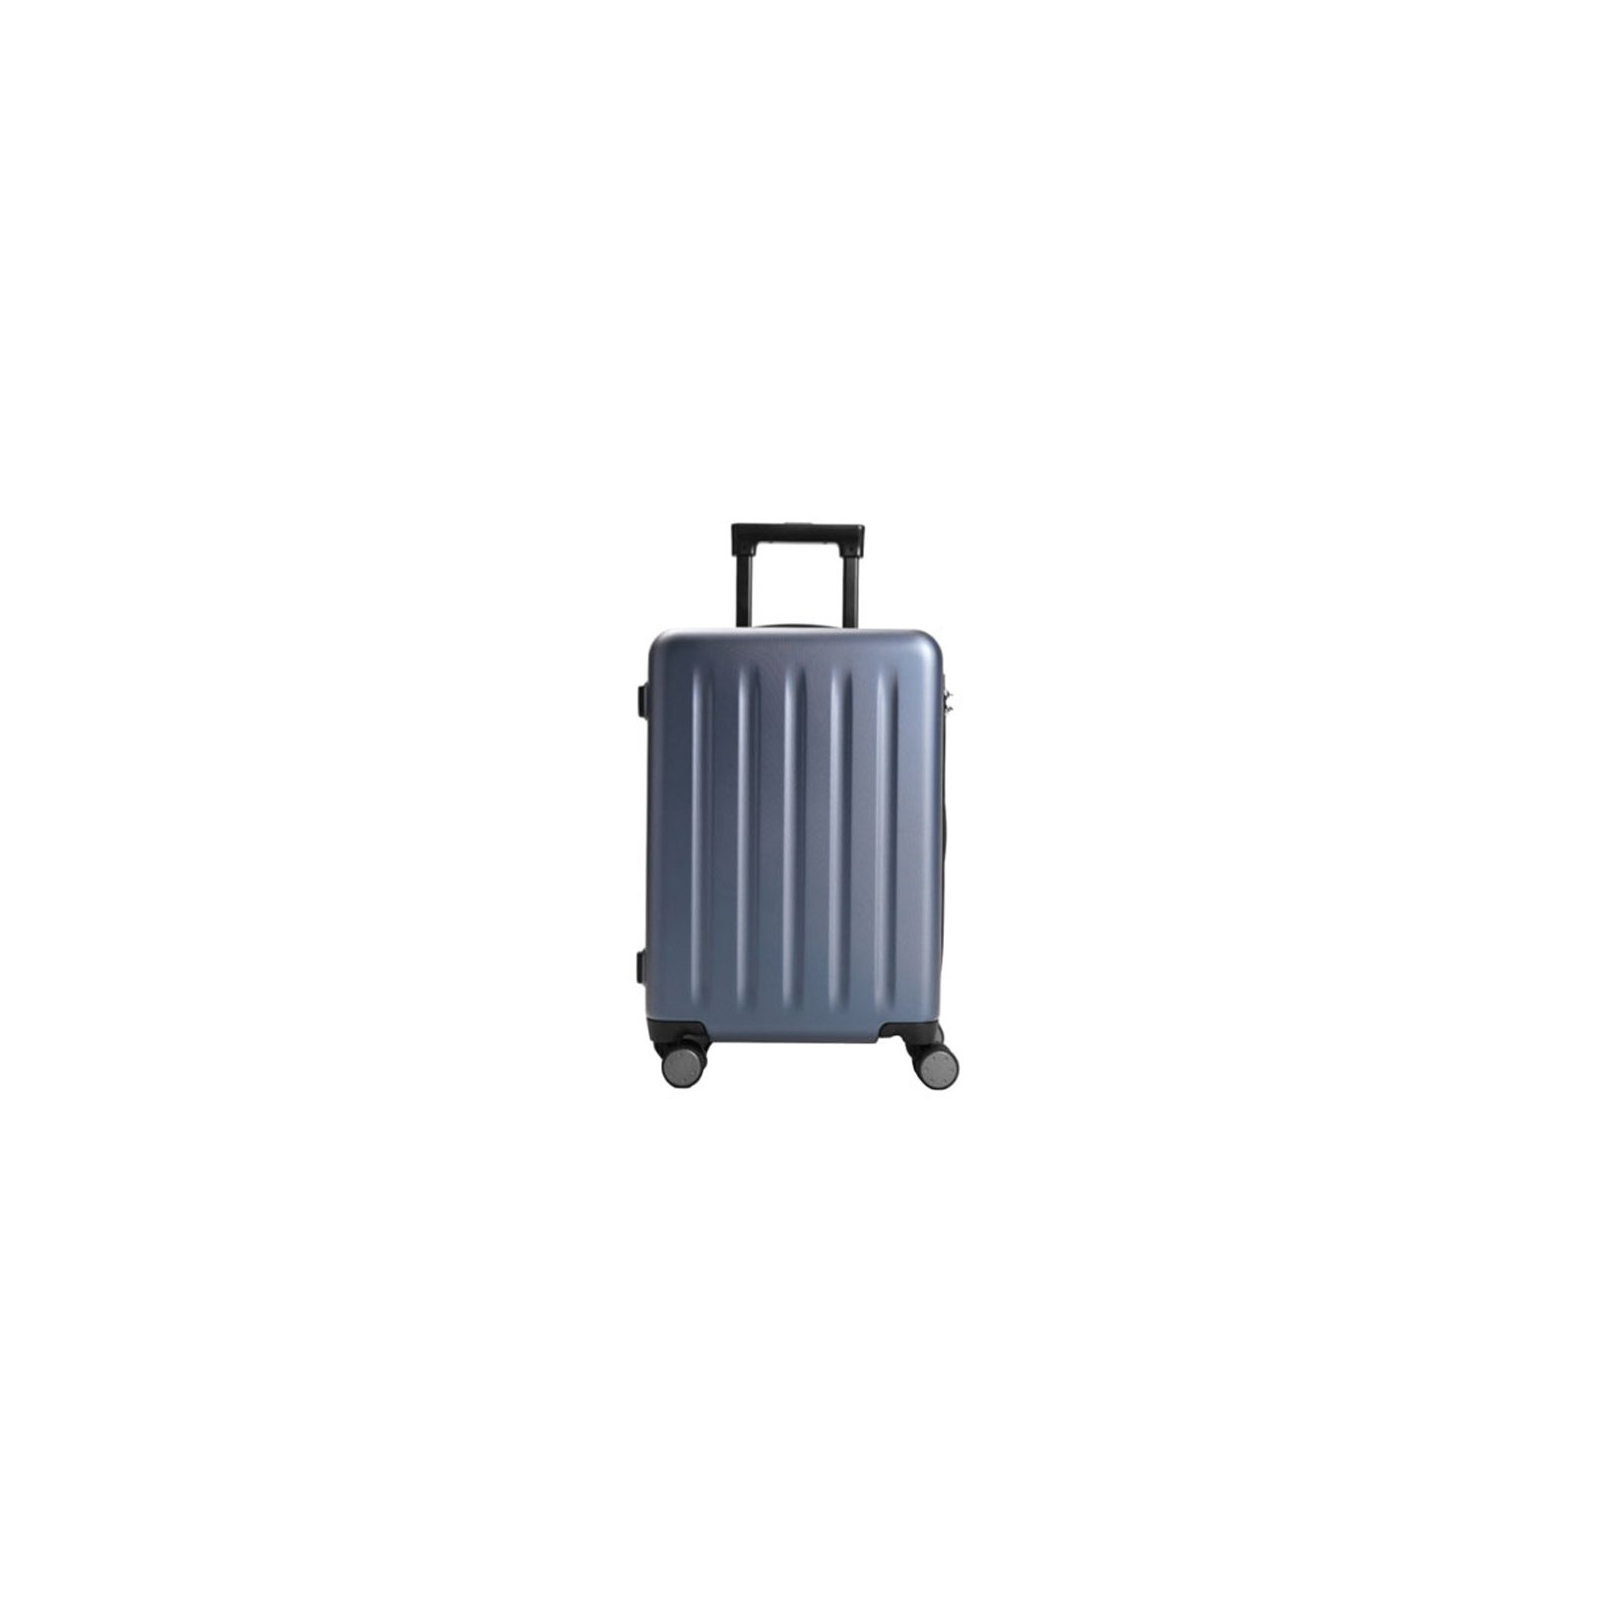 Валіза Xiaomi Ninetygo PC Luggage 24'' Wine Red (6972619238768)